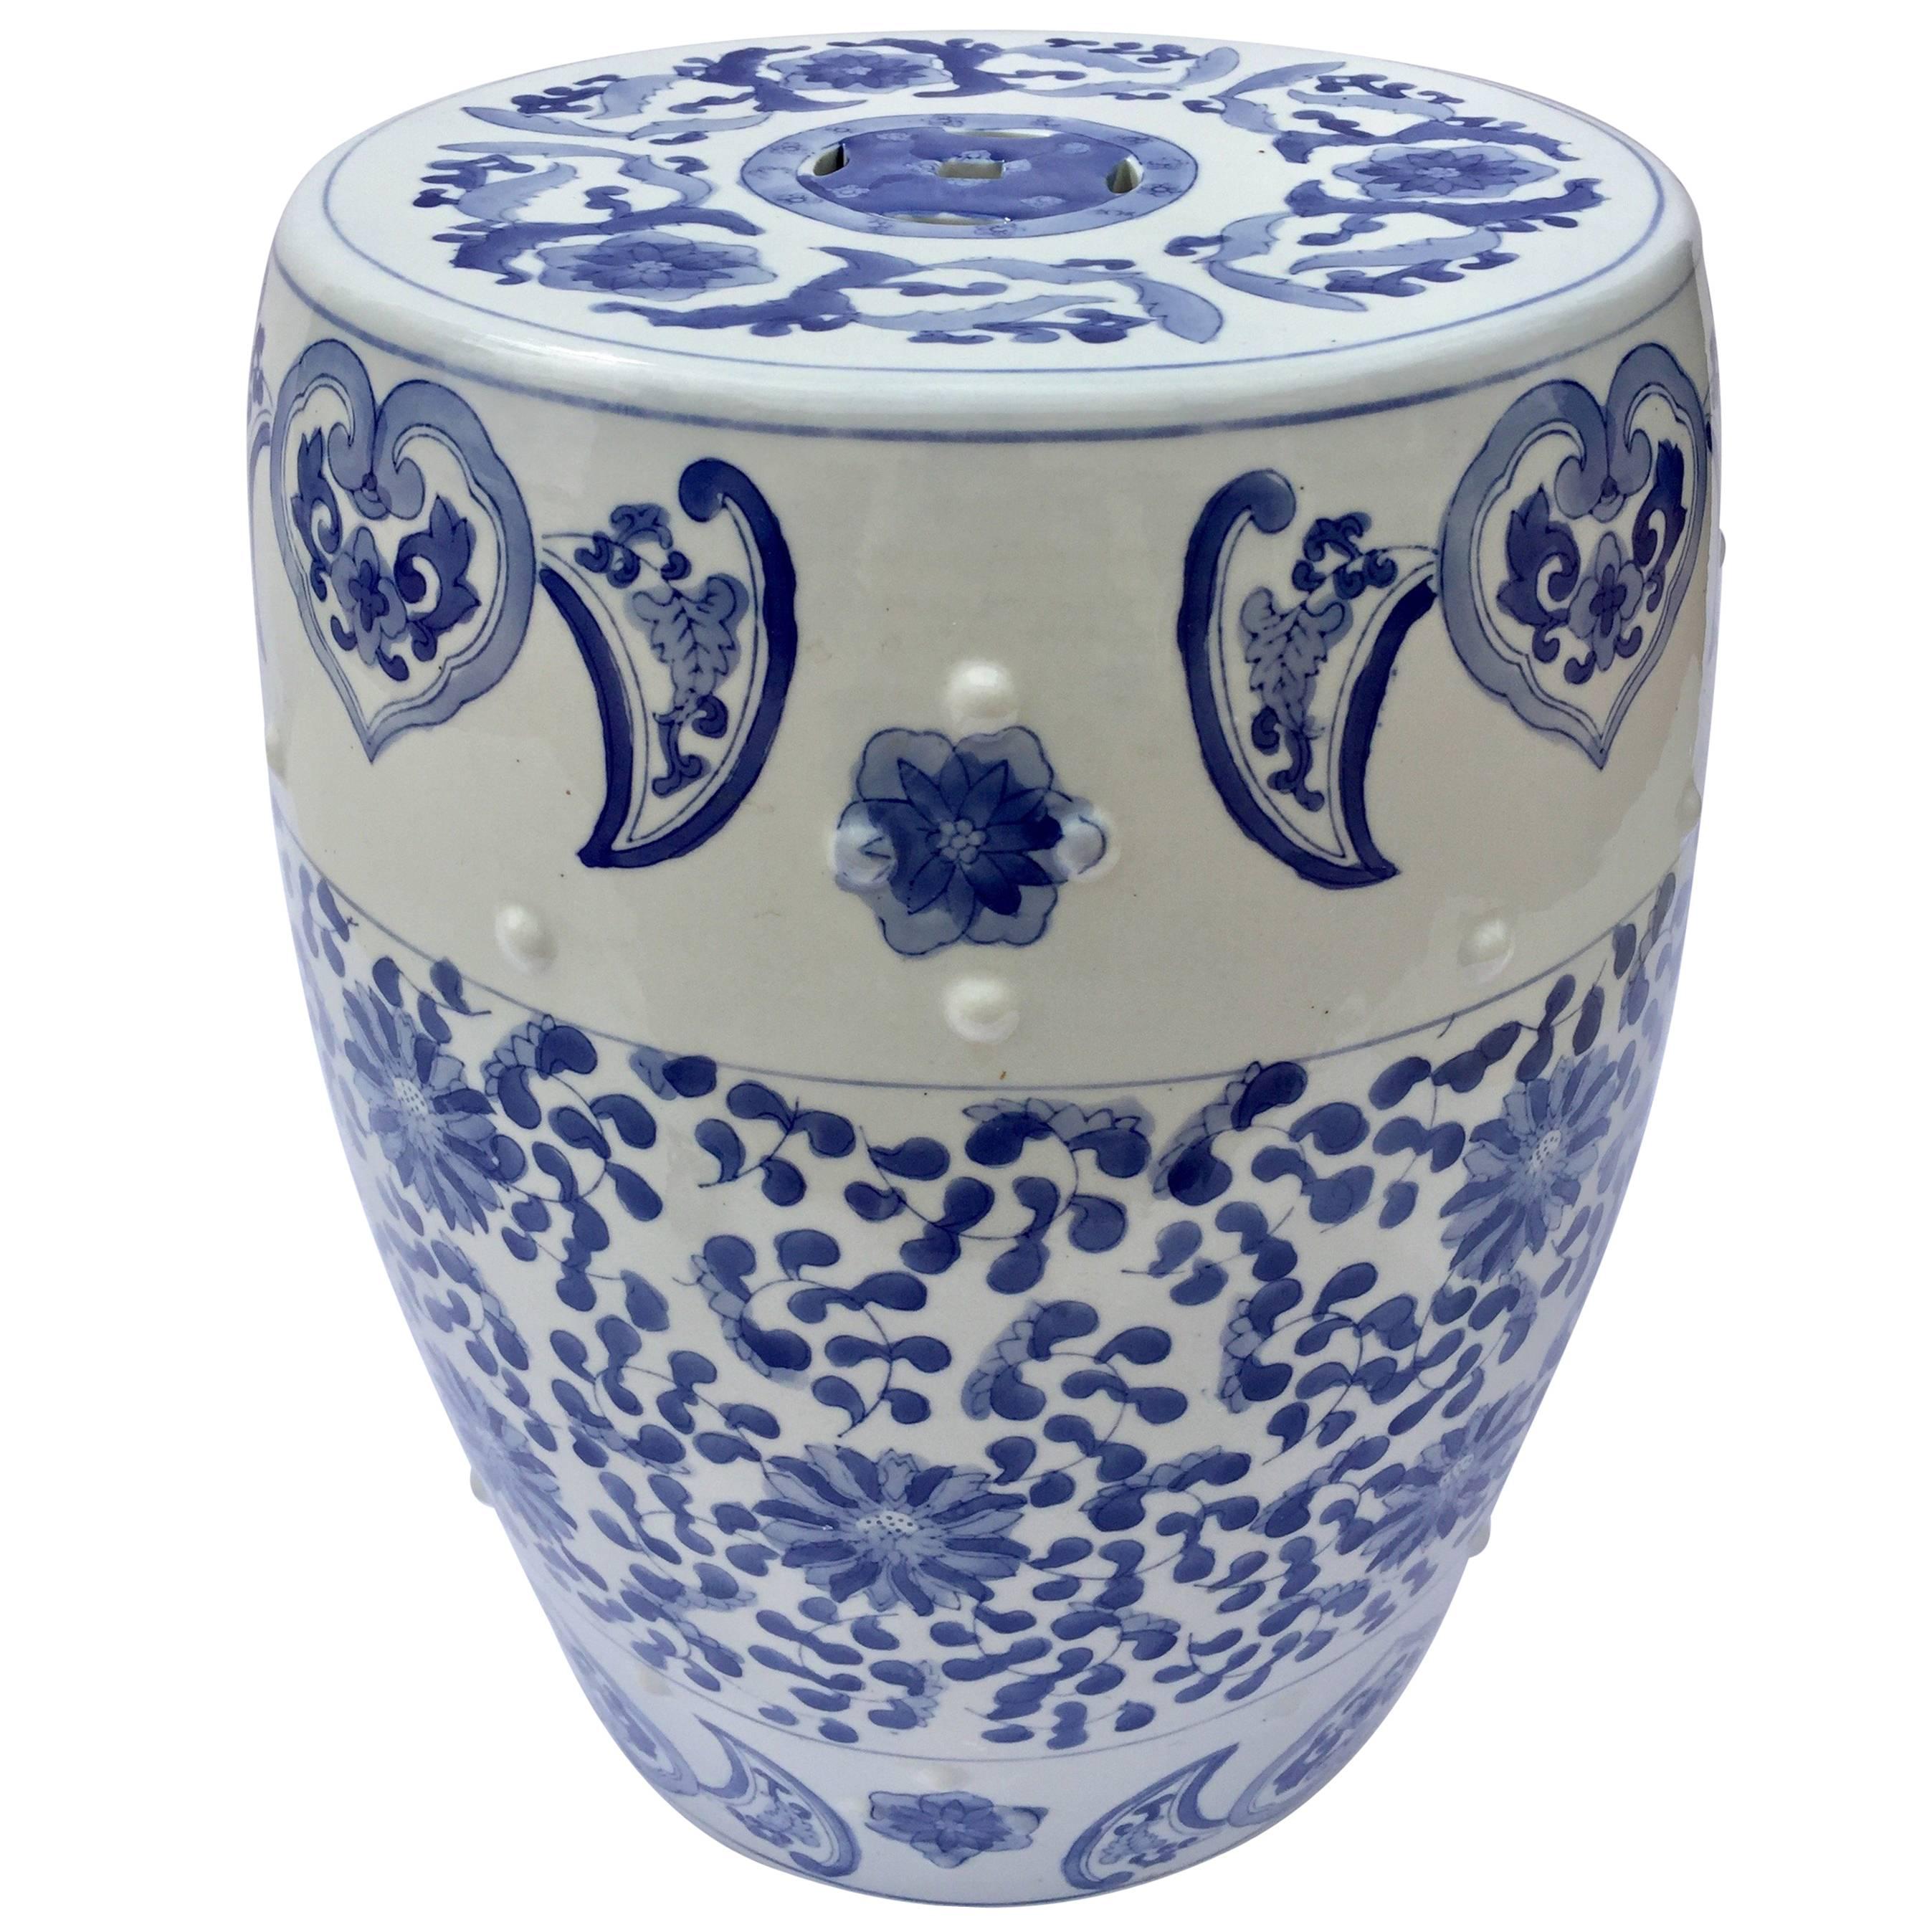 Siège de jardin asiatique en céramique à motifs floraux bleus et blancs